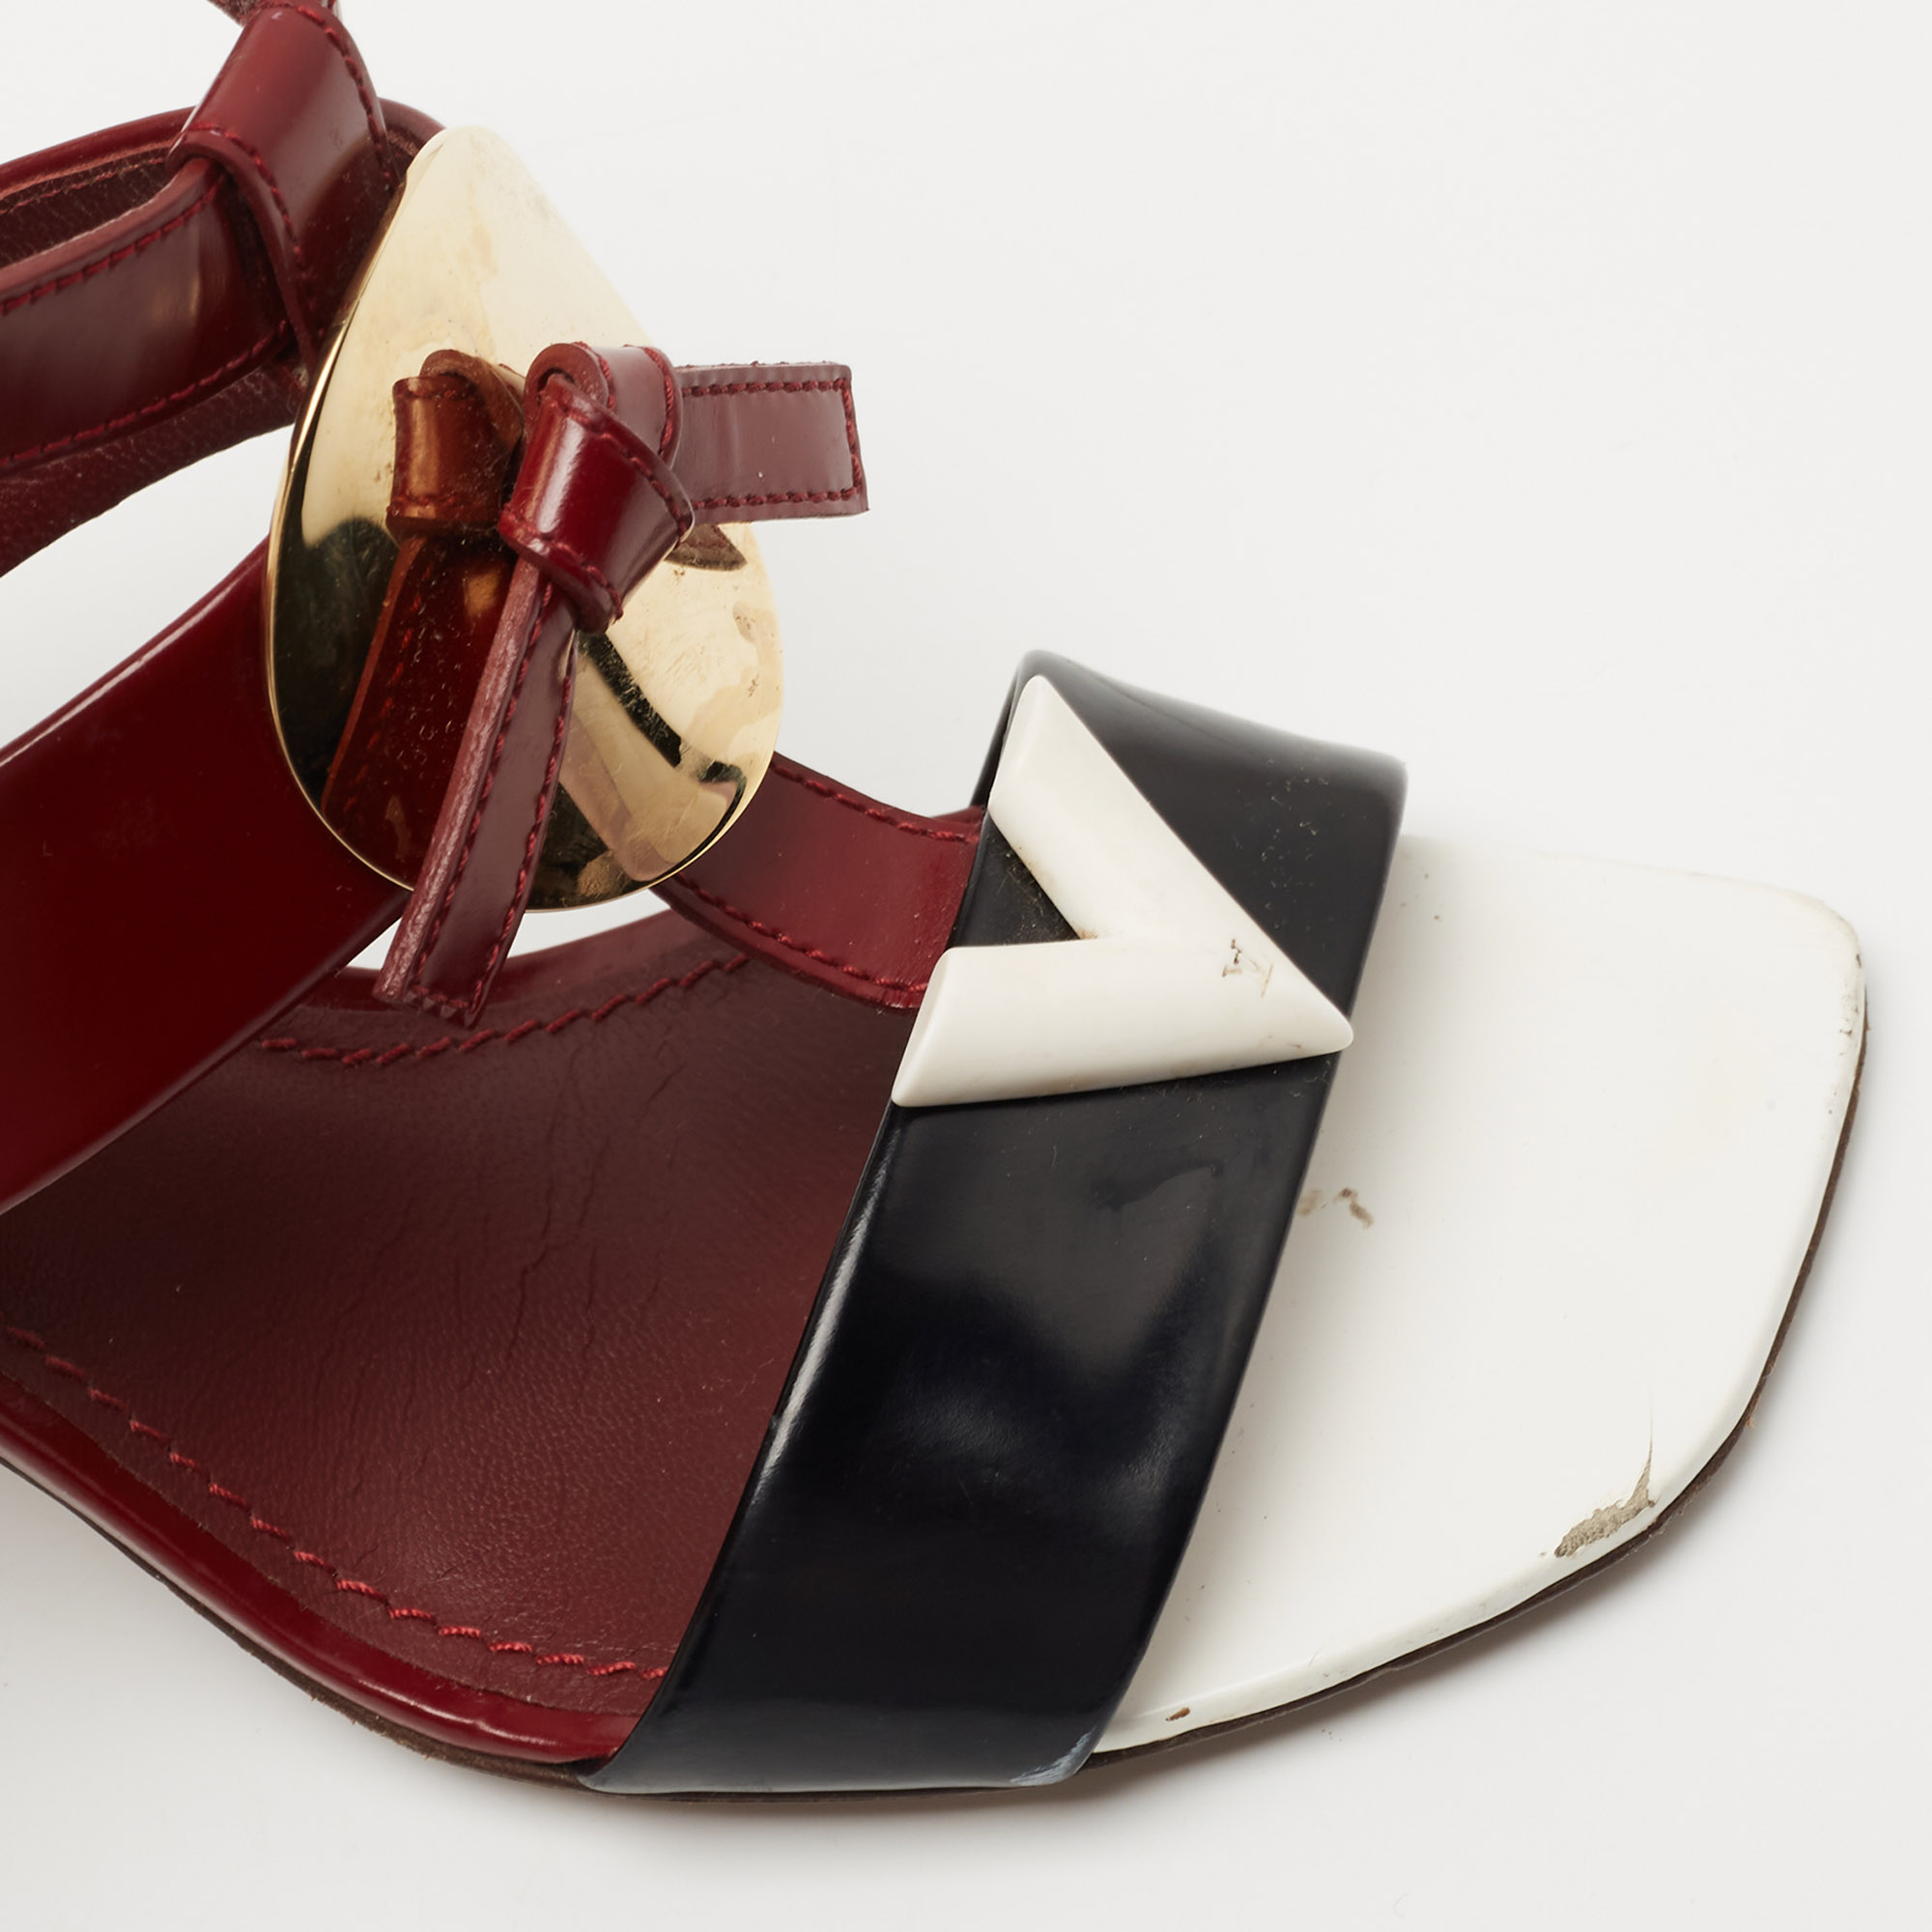 Louis Vuitton Tricolor Leather Ankle Strap Sandals Size 36.5